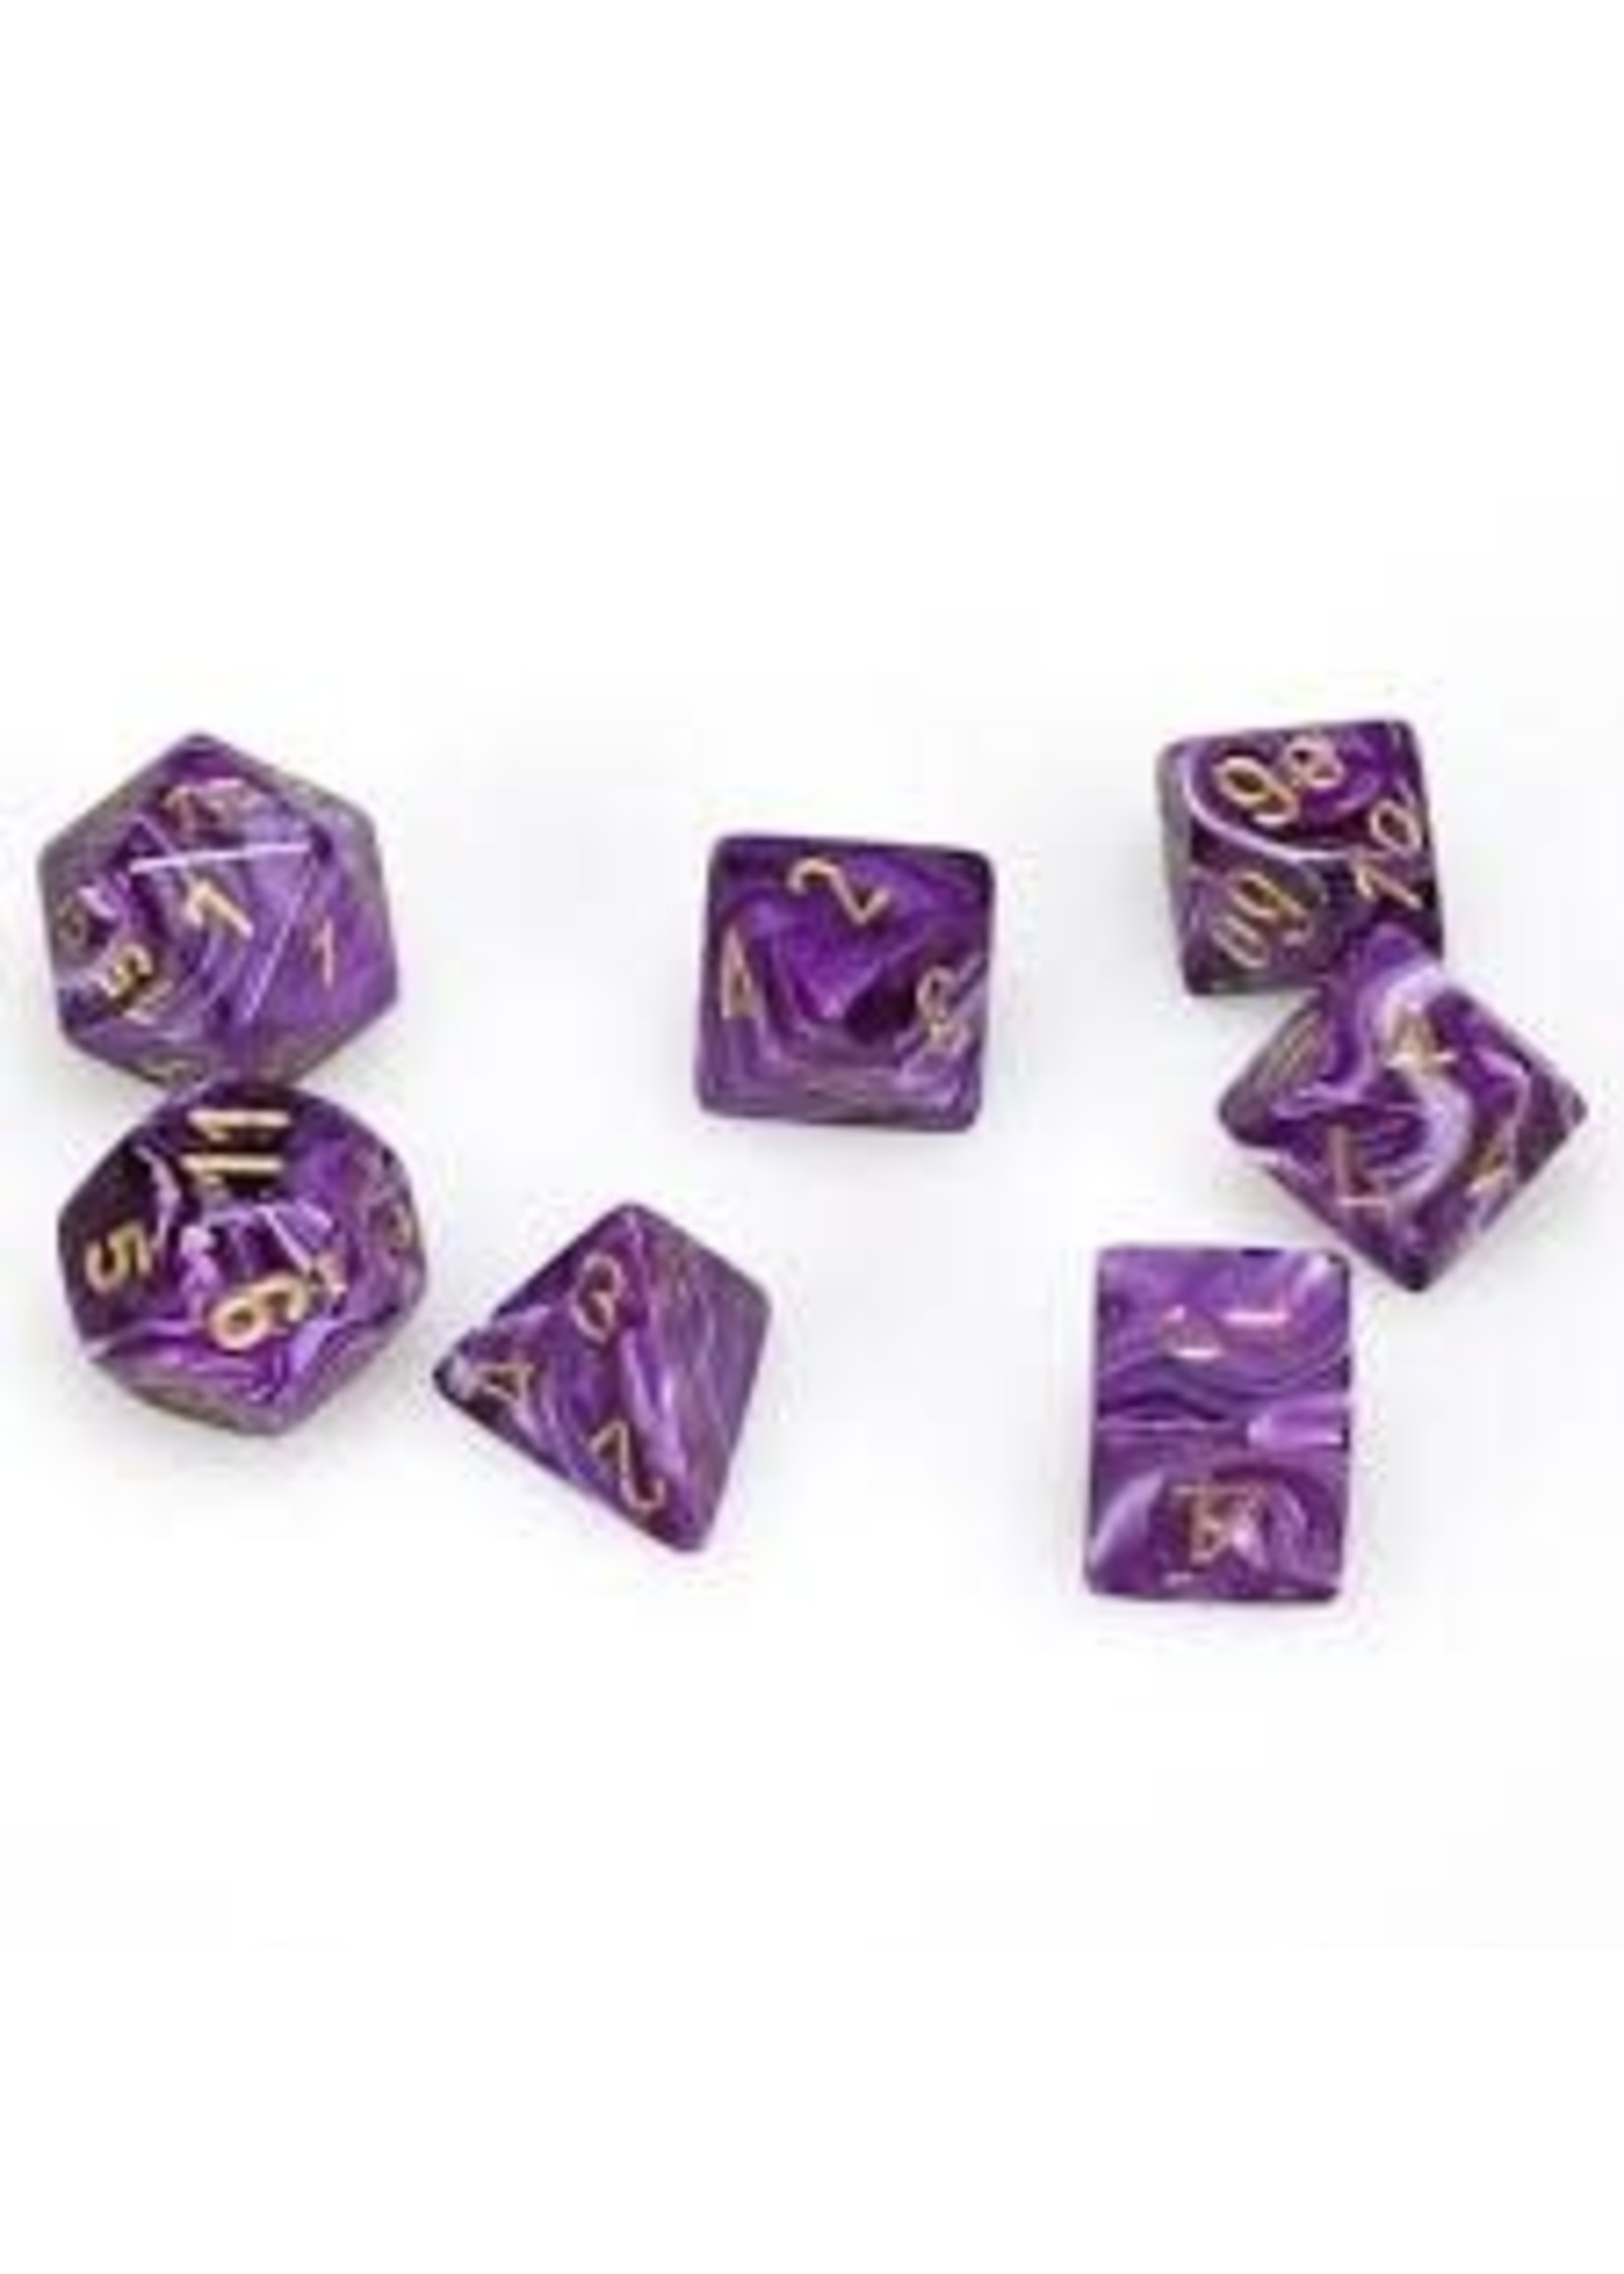 Chessex Vortex Poly 7 set: Purple w/ Gold